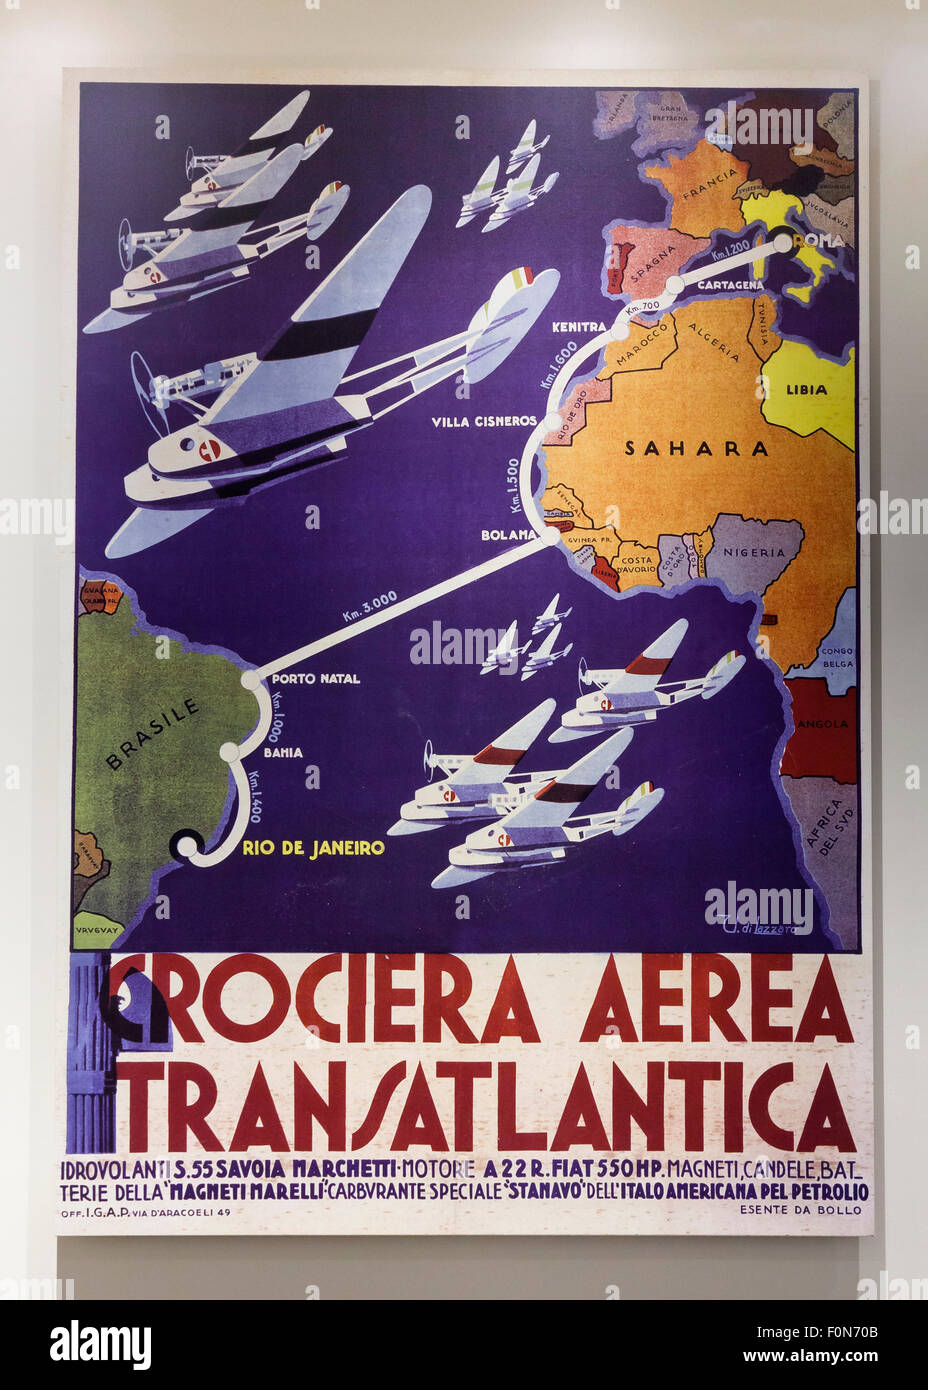 Luft Italien und Brasilien transatlantischen Kreuzfahrt Werbeplakat, um 1930 Stockfoto